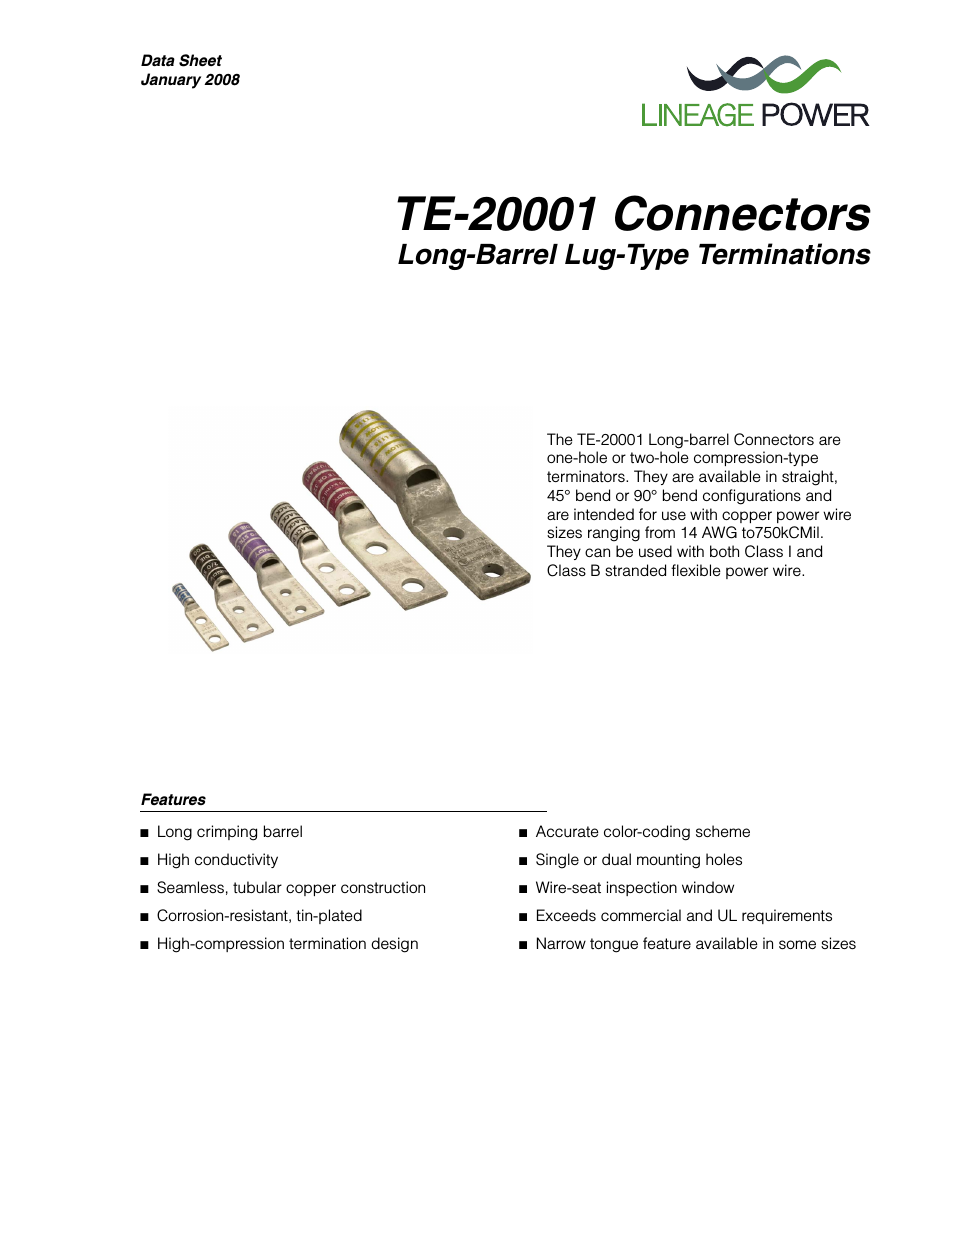 TE20001 Connectors